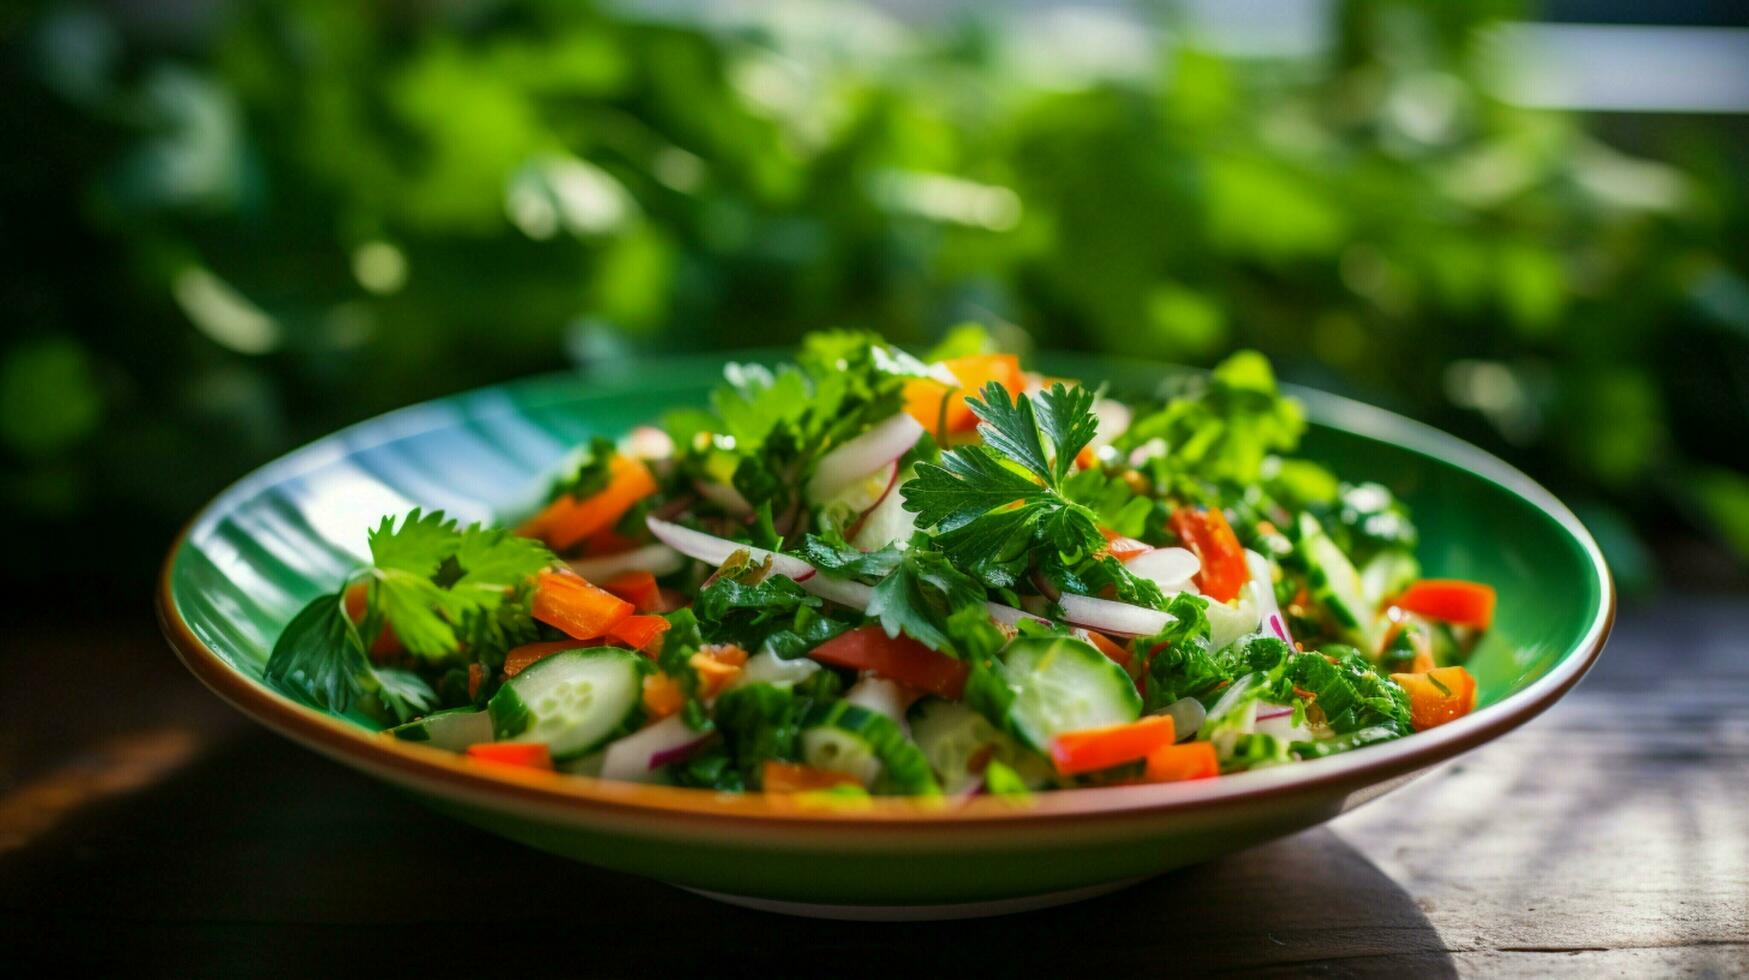 fresco verdura insalata con prezzemolo e coriandolo salutare foto